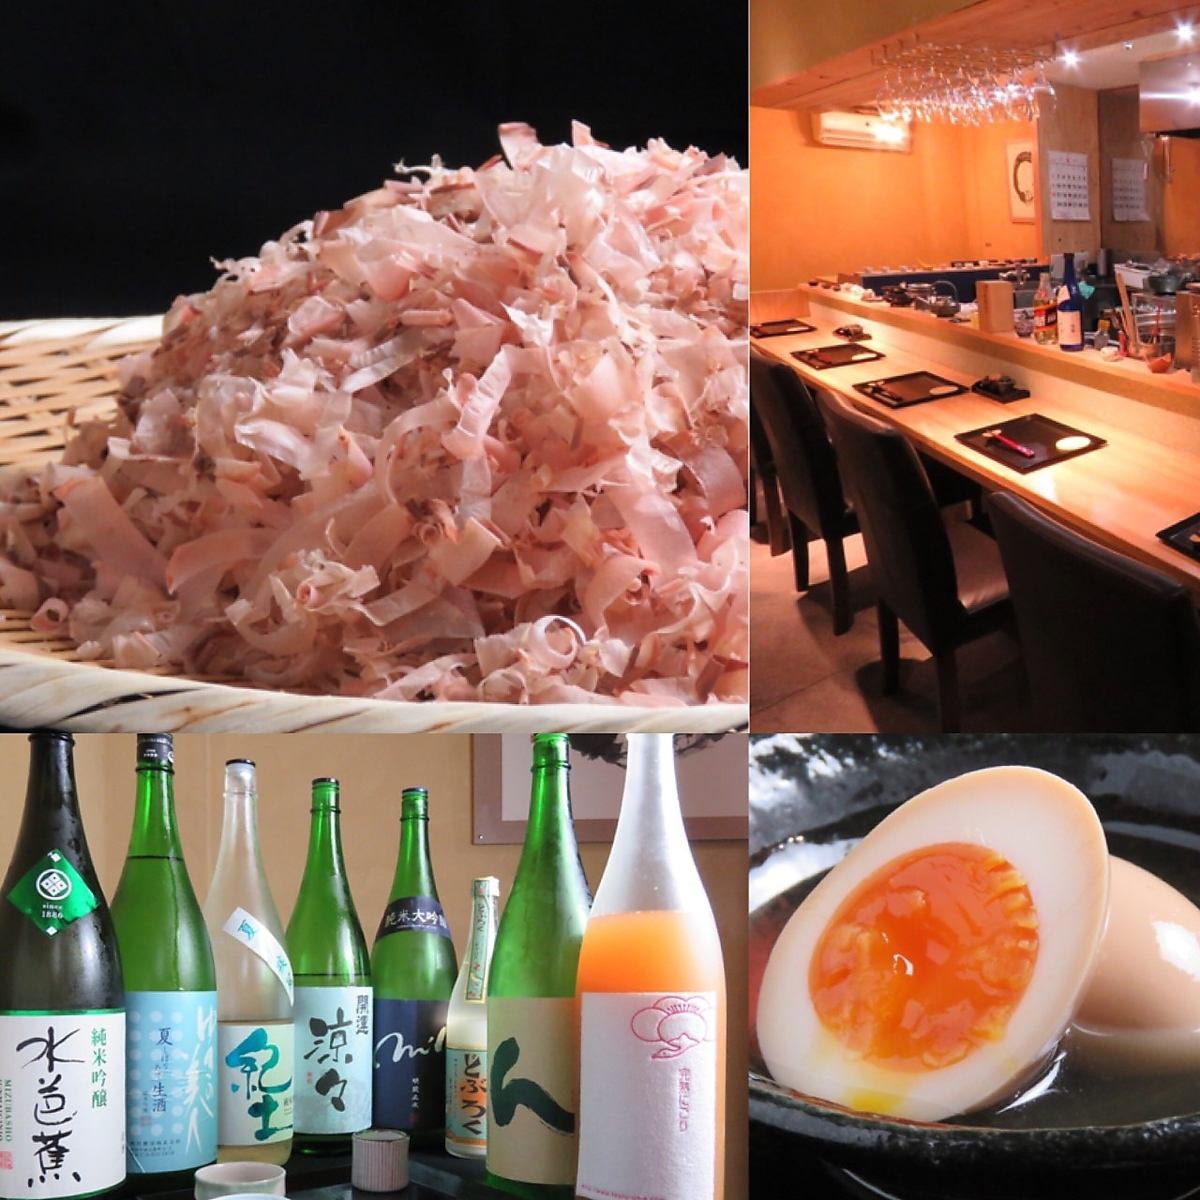 使用新鮮切碎的鰹魚薄片製成的“魚湯”非常美味！可以品嚐關東煮和鮮魚等優雅的日本料理的餐廳。